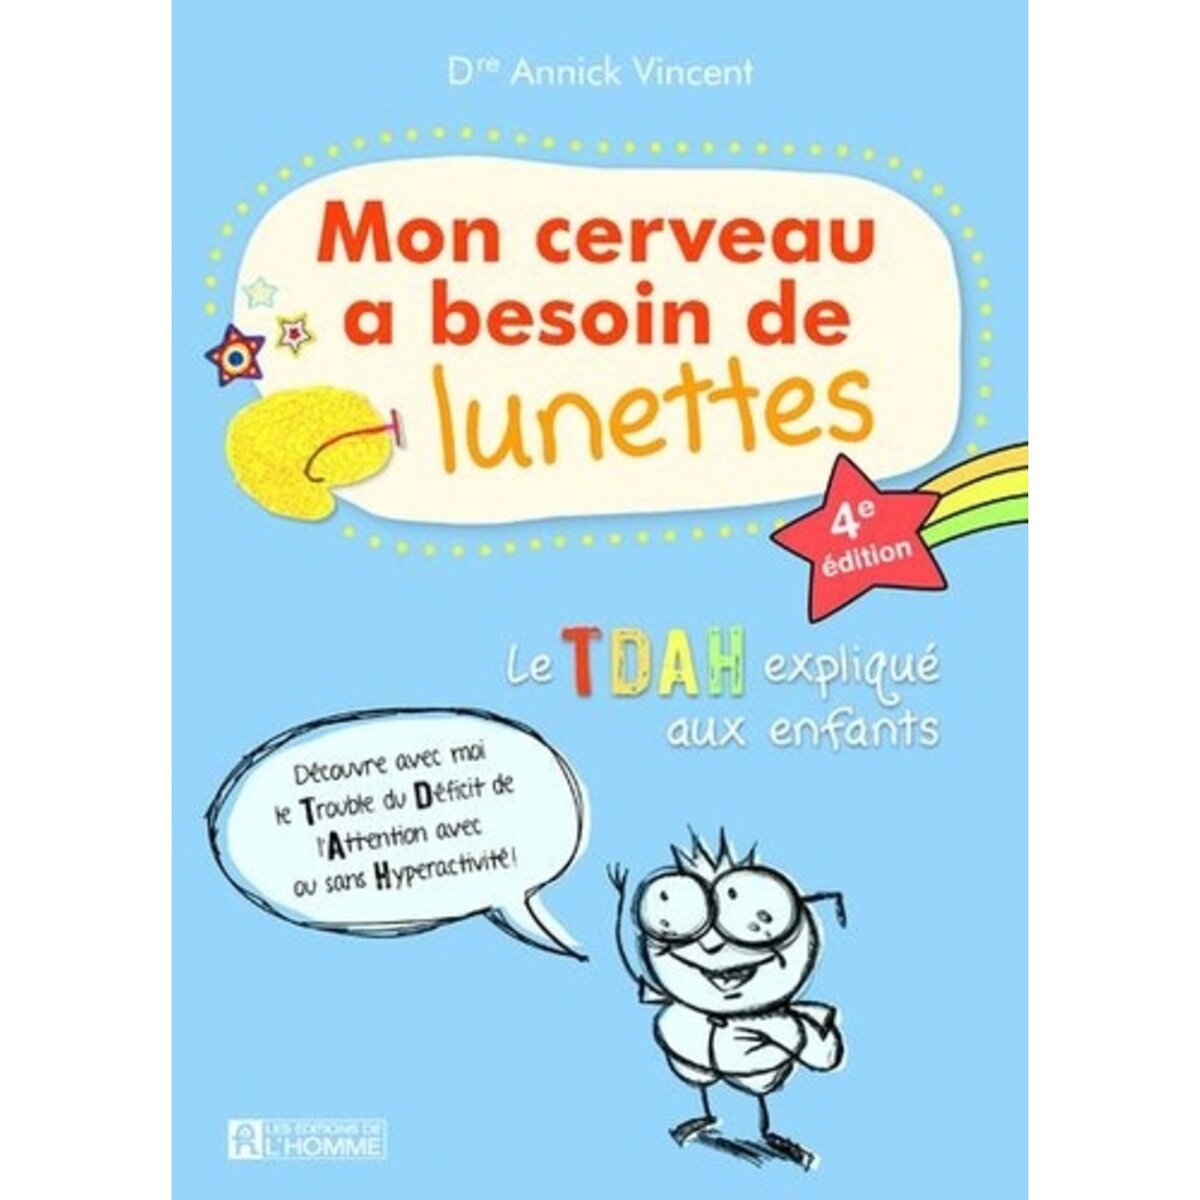  MON CERVEAU A BESOIN DE LUNETTES. LE TDAH EXPLIQUE AUX ENFANTS, 4E EDITION, Vincent Annick